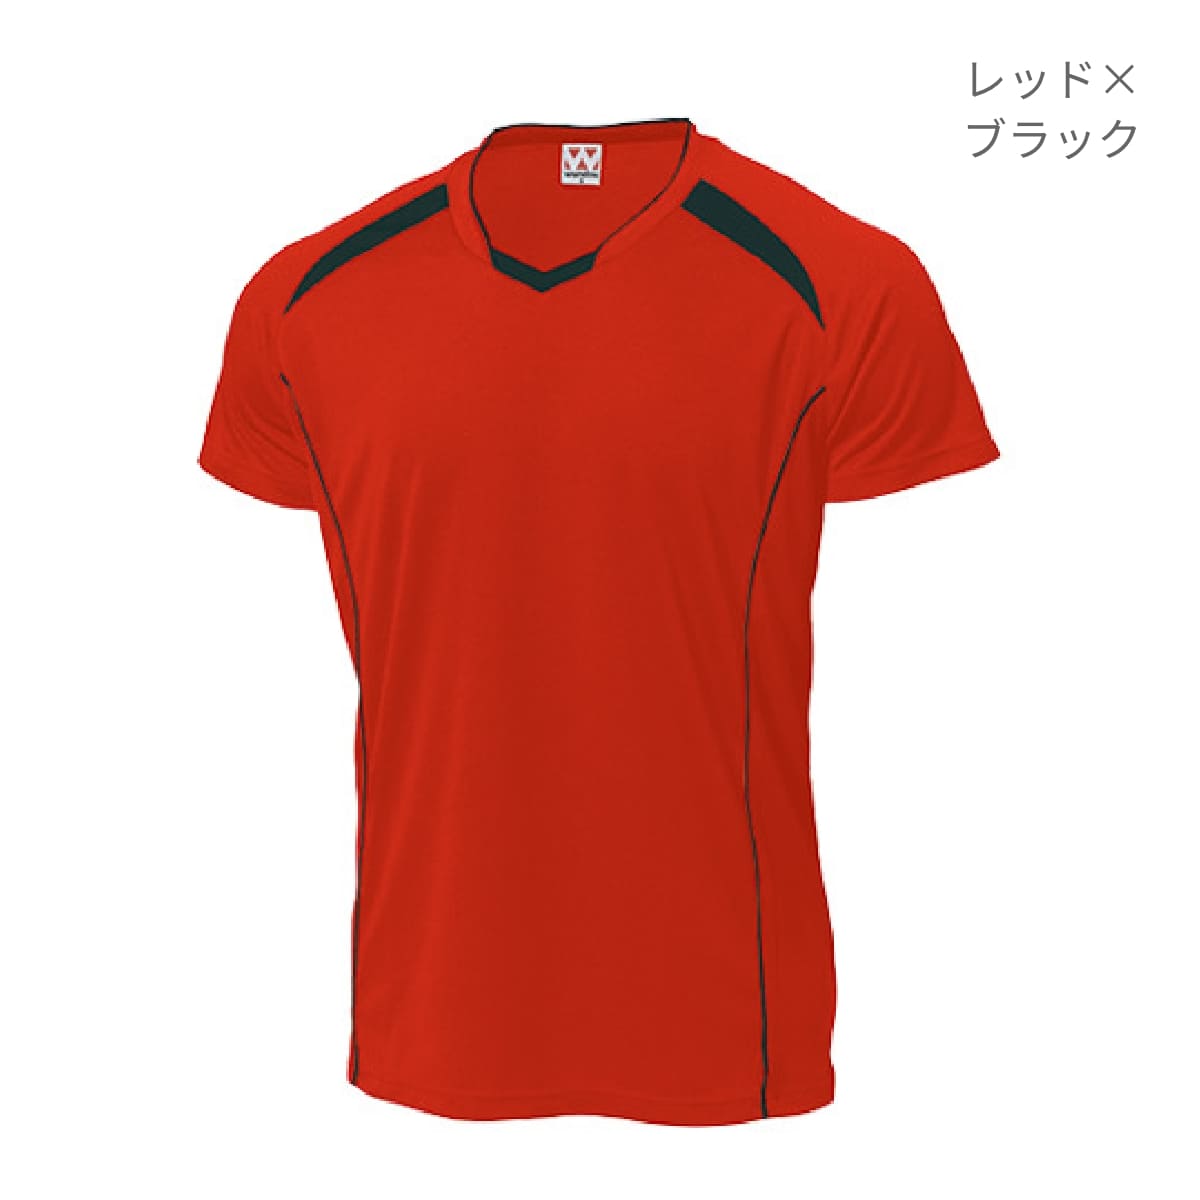 【送料無料】バレーボールシャツ | ユニフォーム | 1枚 | P1610 | ホワイト×ダークグレー